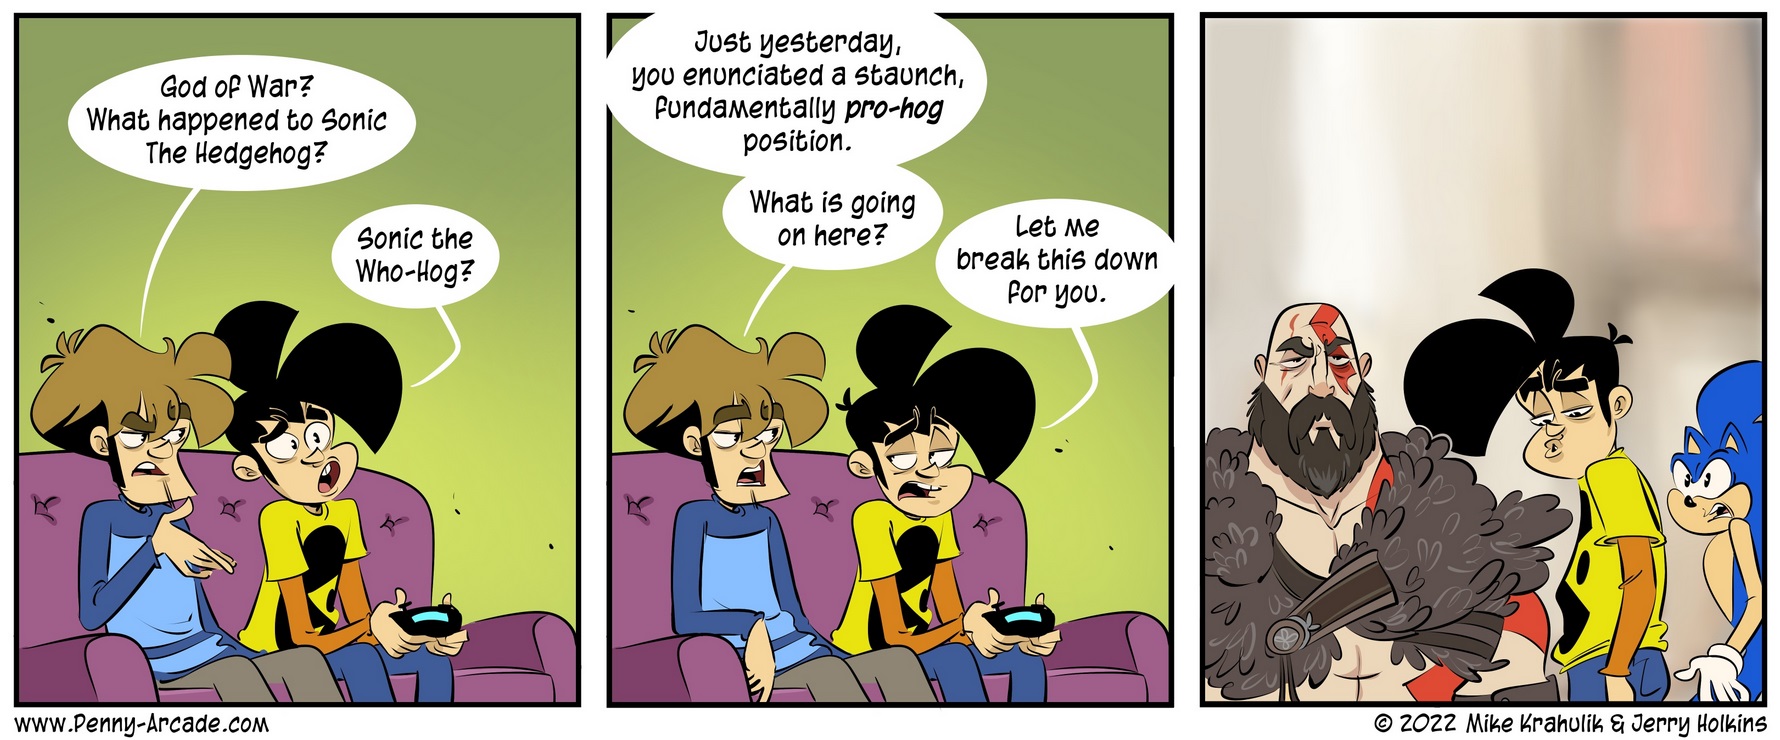 Penny Arcade Comic, der die Wichtigkeit von God of War mit dem Distracted Boyfriend Meme gleichsetzt